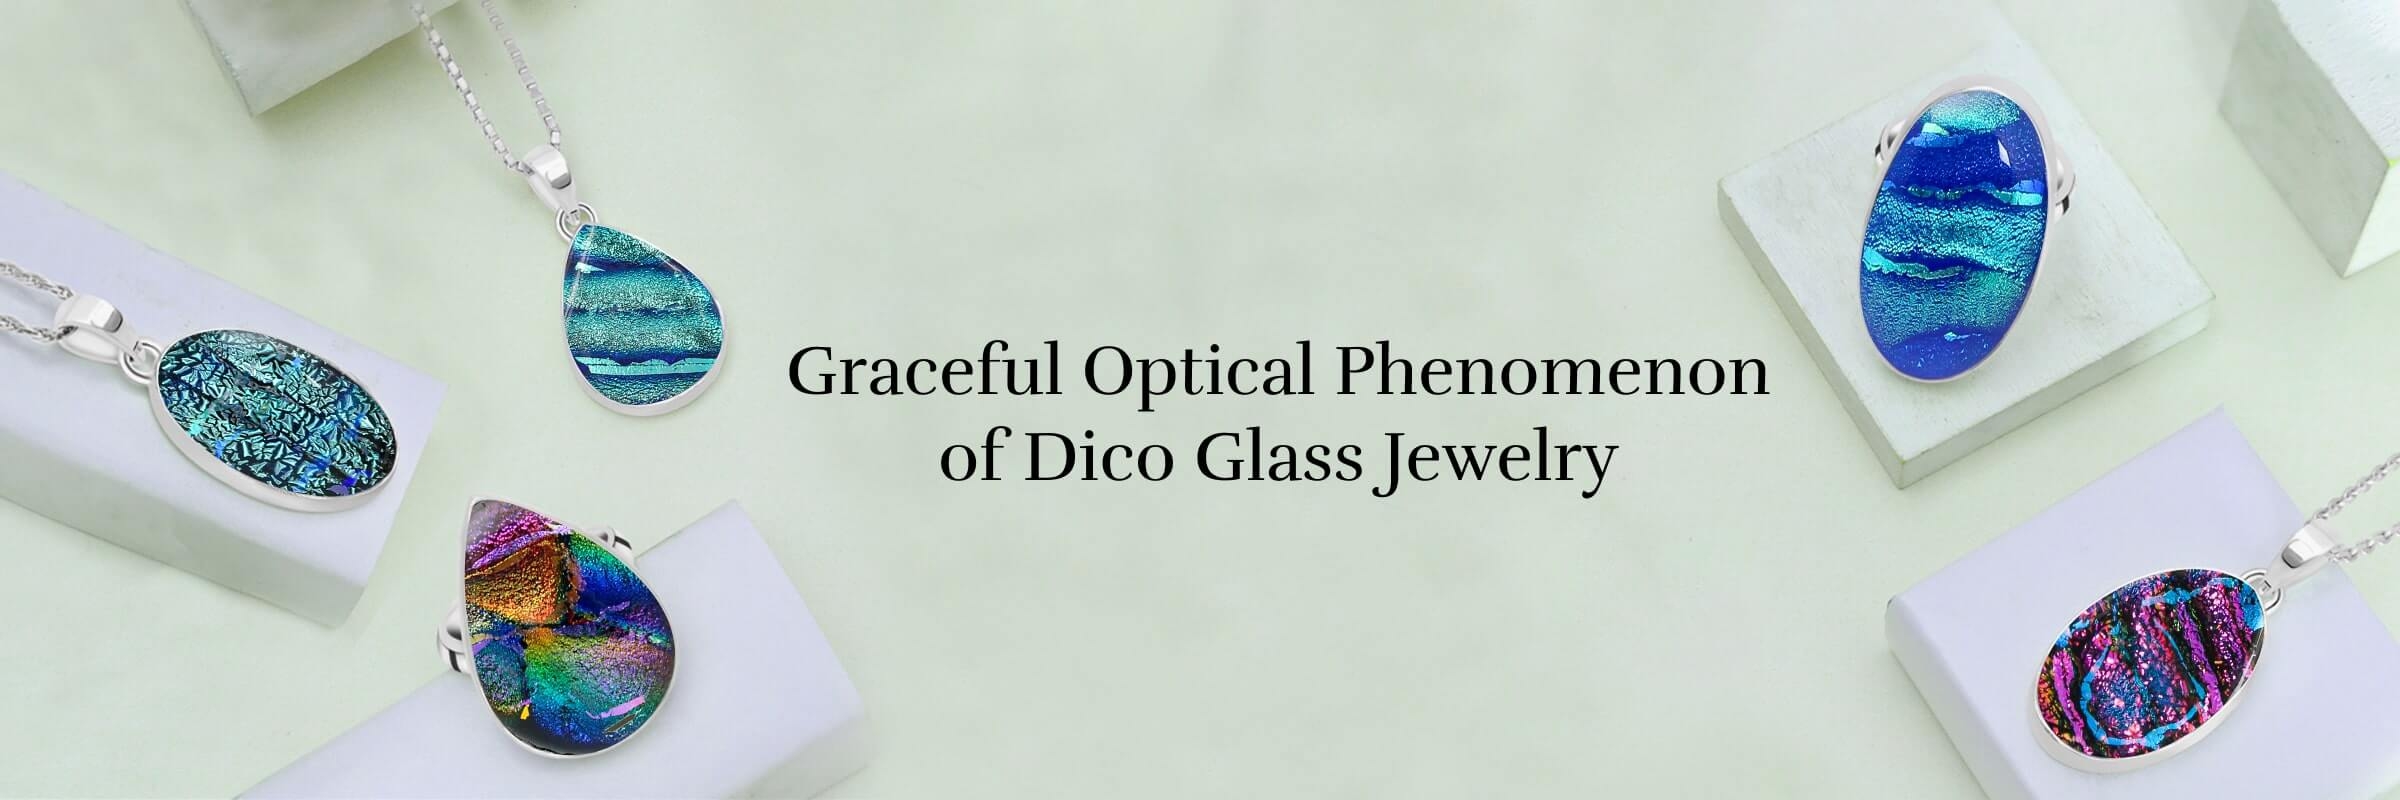 Dico Glass Jewelry